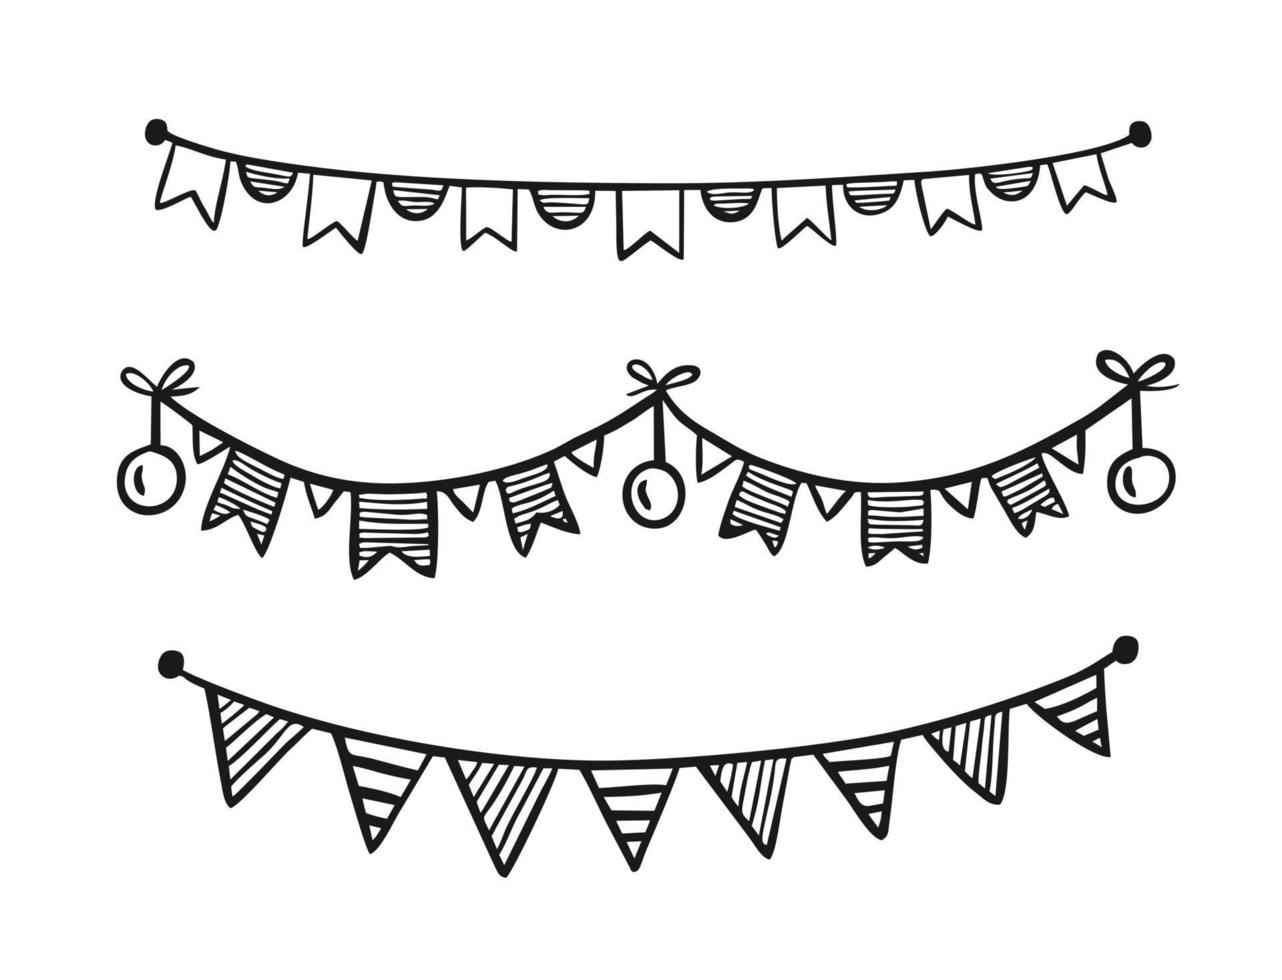 guirnalda festiva pintada en estilo garabato aislada en la ilustración de vector de fondo blanco para el festival de cumpleaños decoración de vacaciones de carnaval.